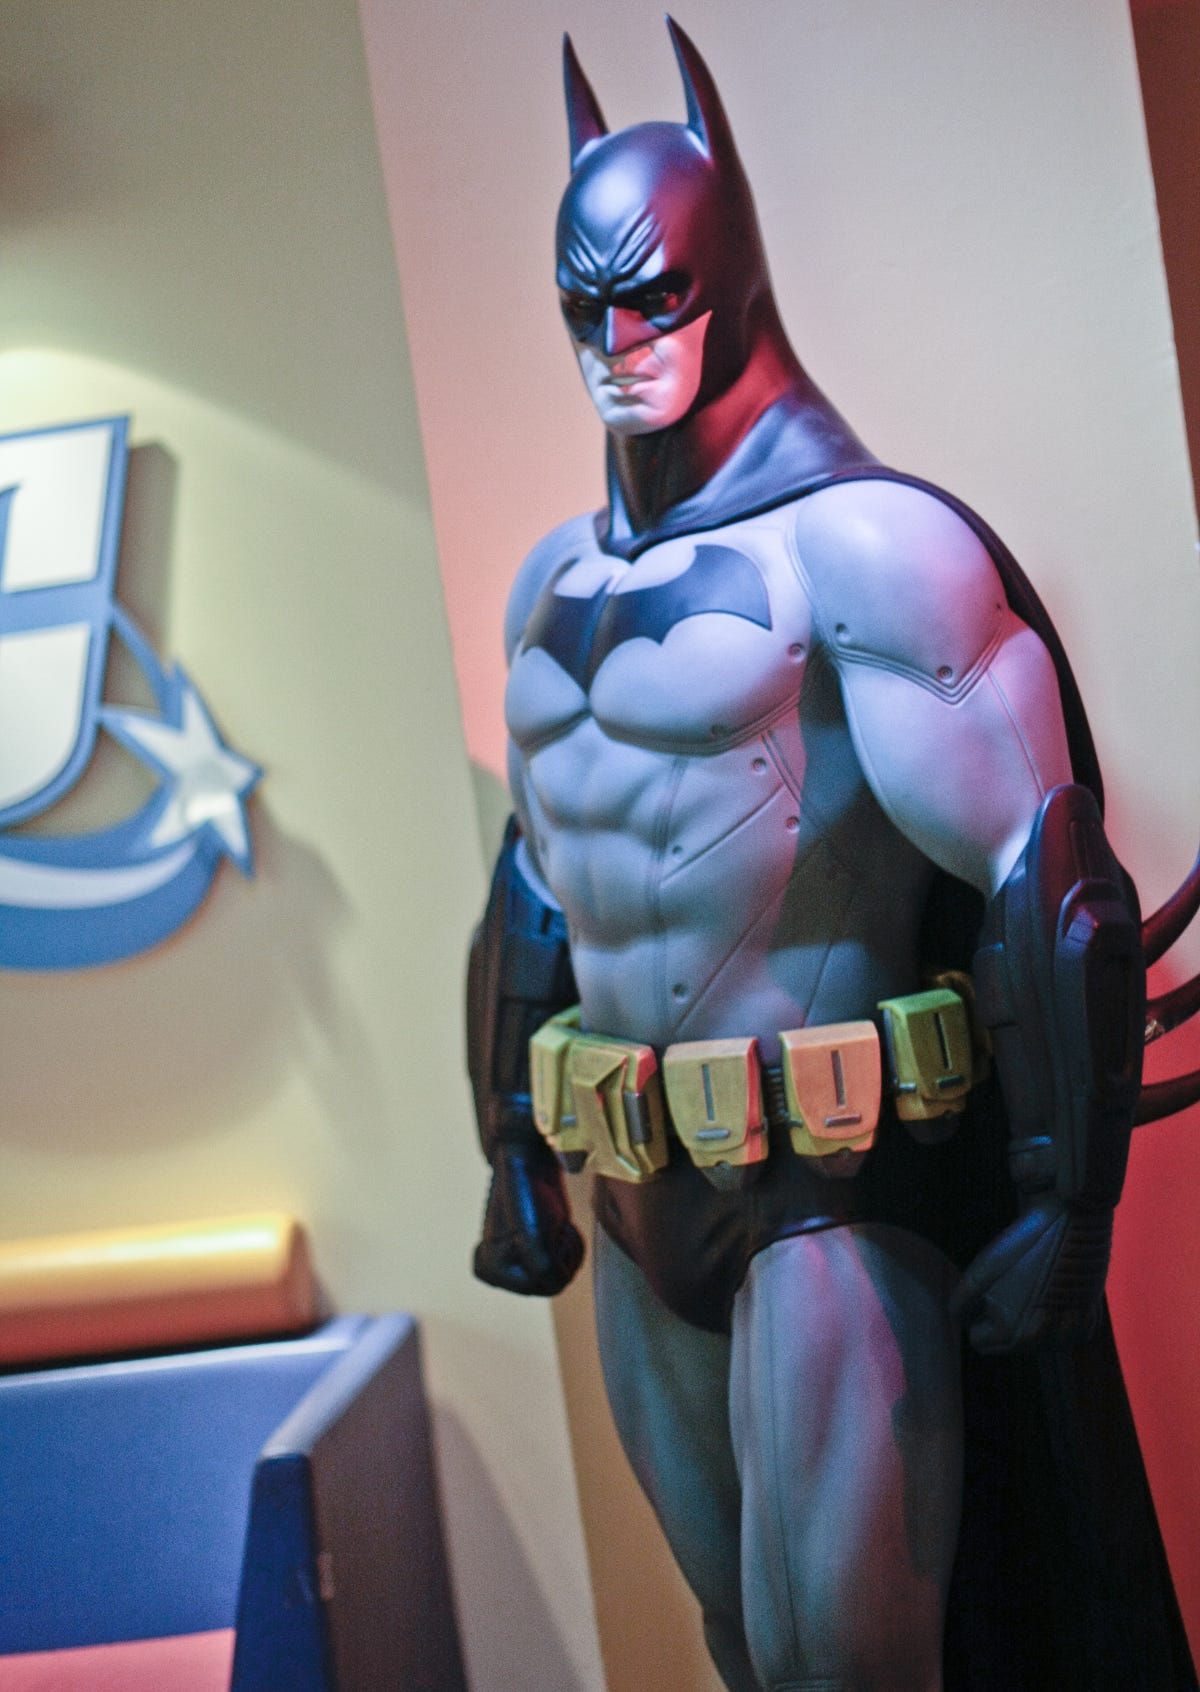 2012-DC-Comics-Batman-statue.jpg